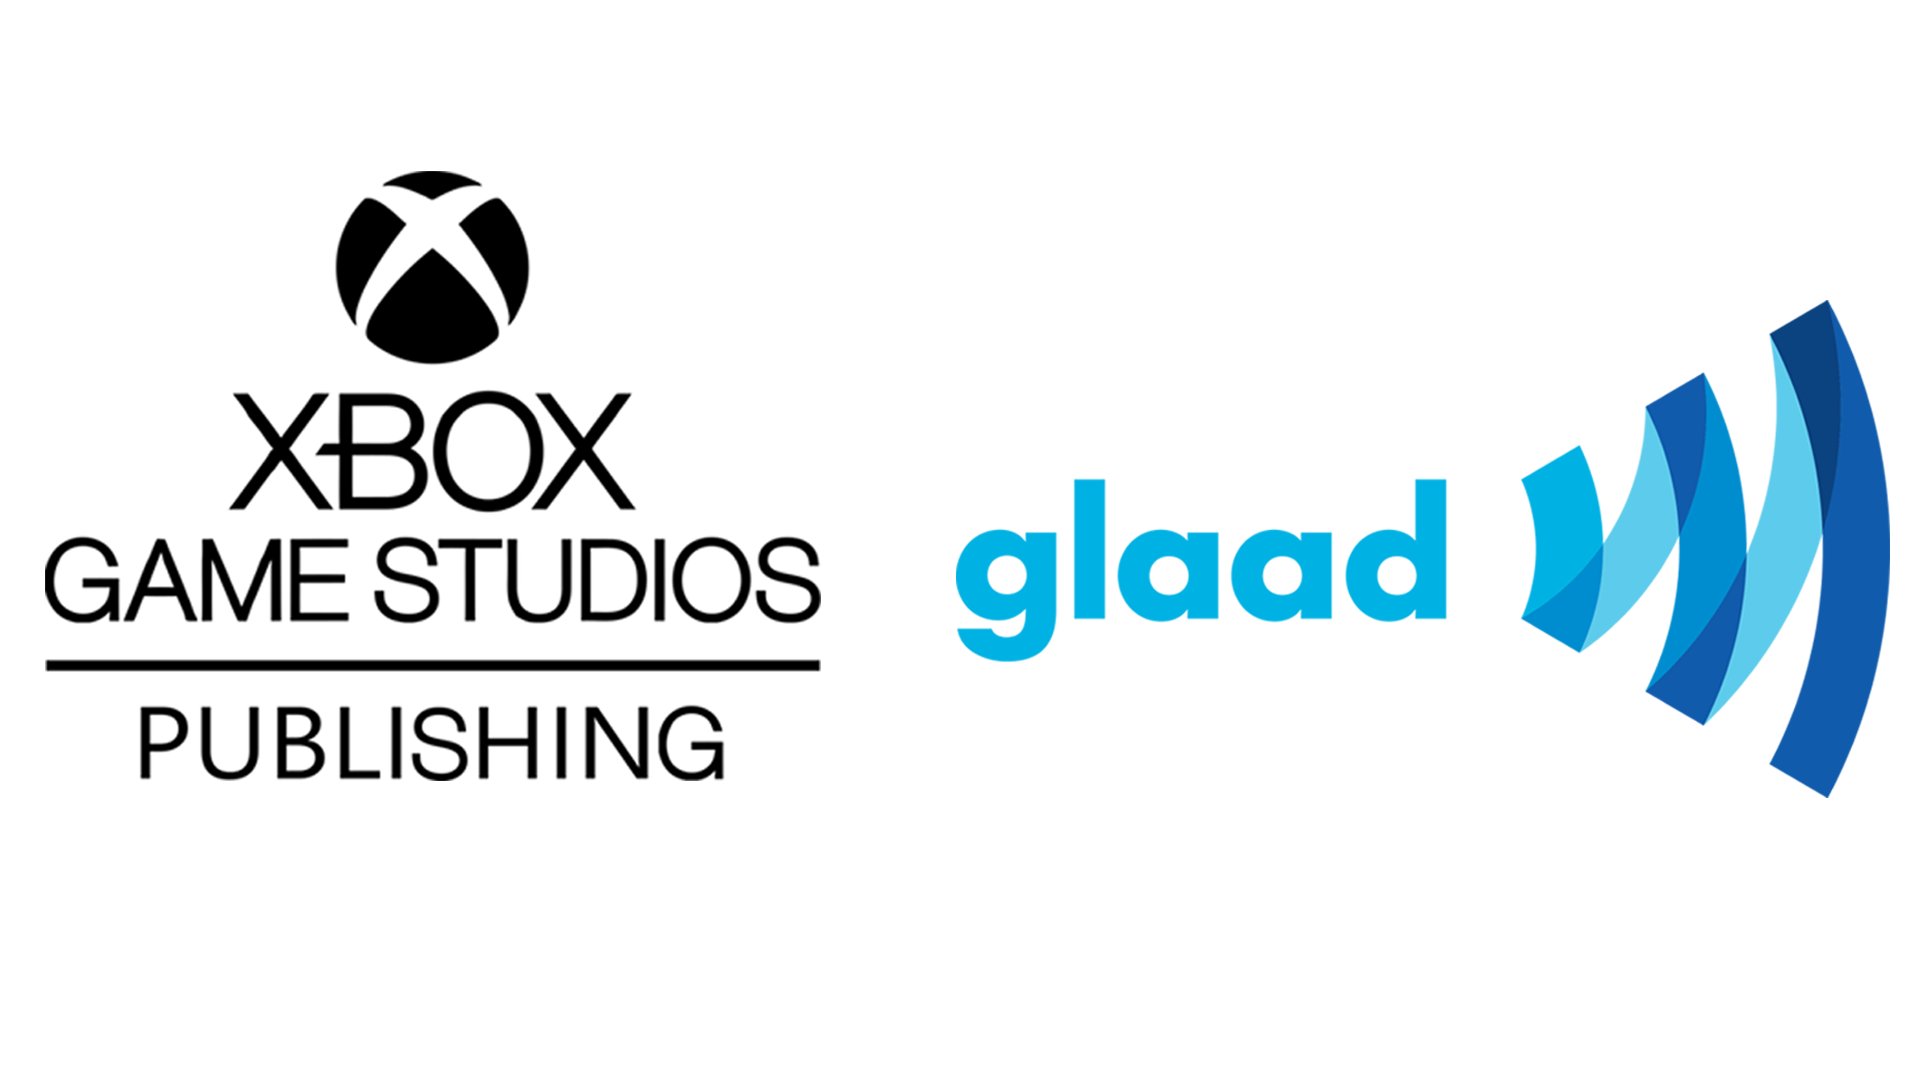 Xbox Game Studios